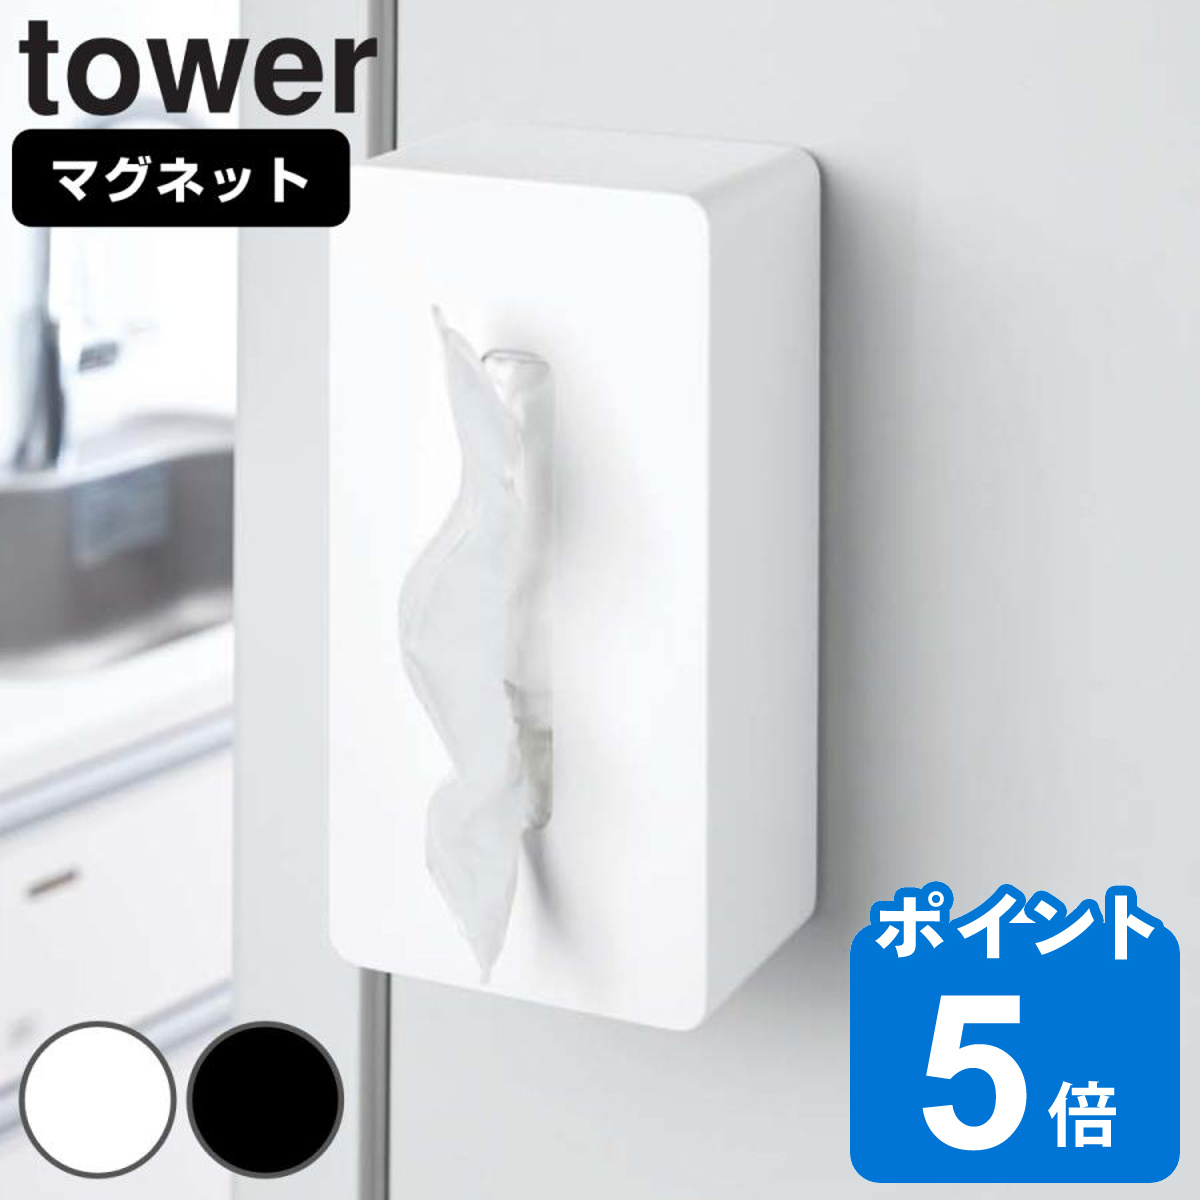 山崎実業 tower マグネットティッシュケース タワー